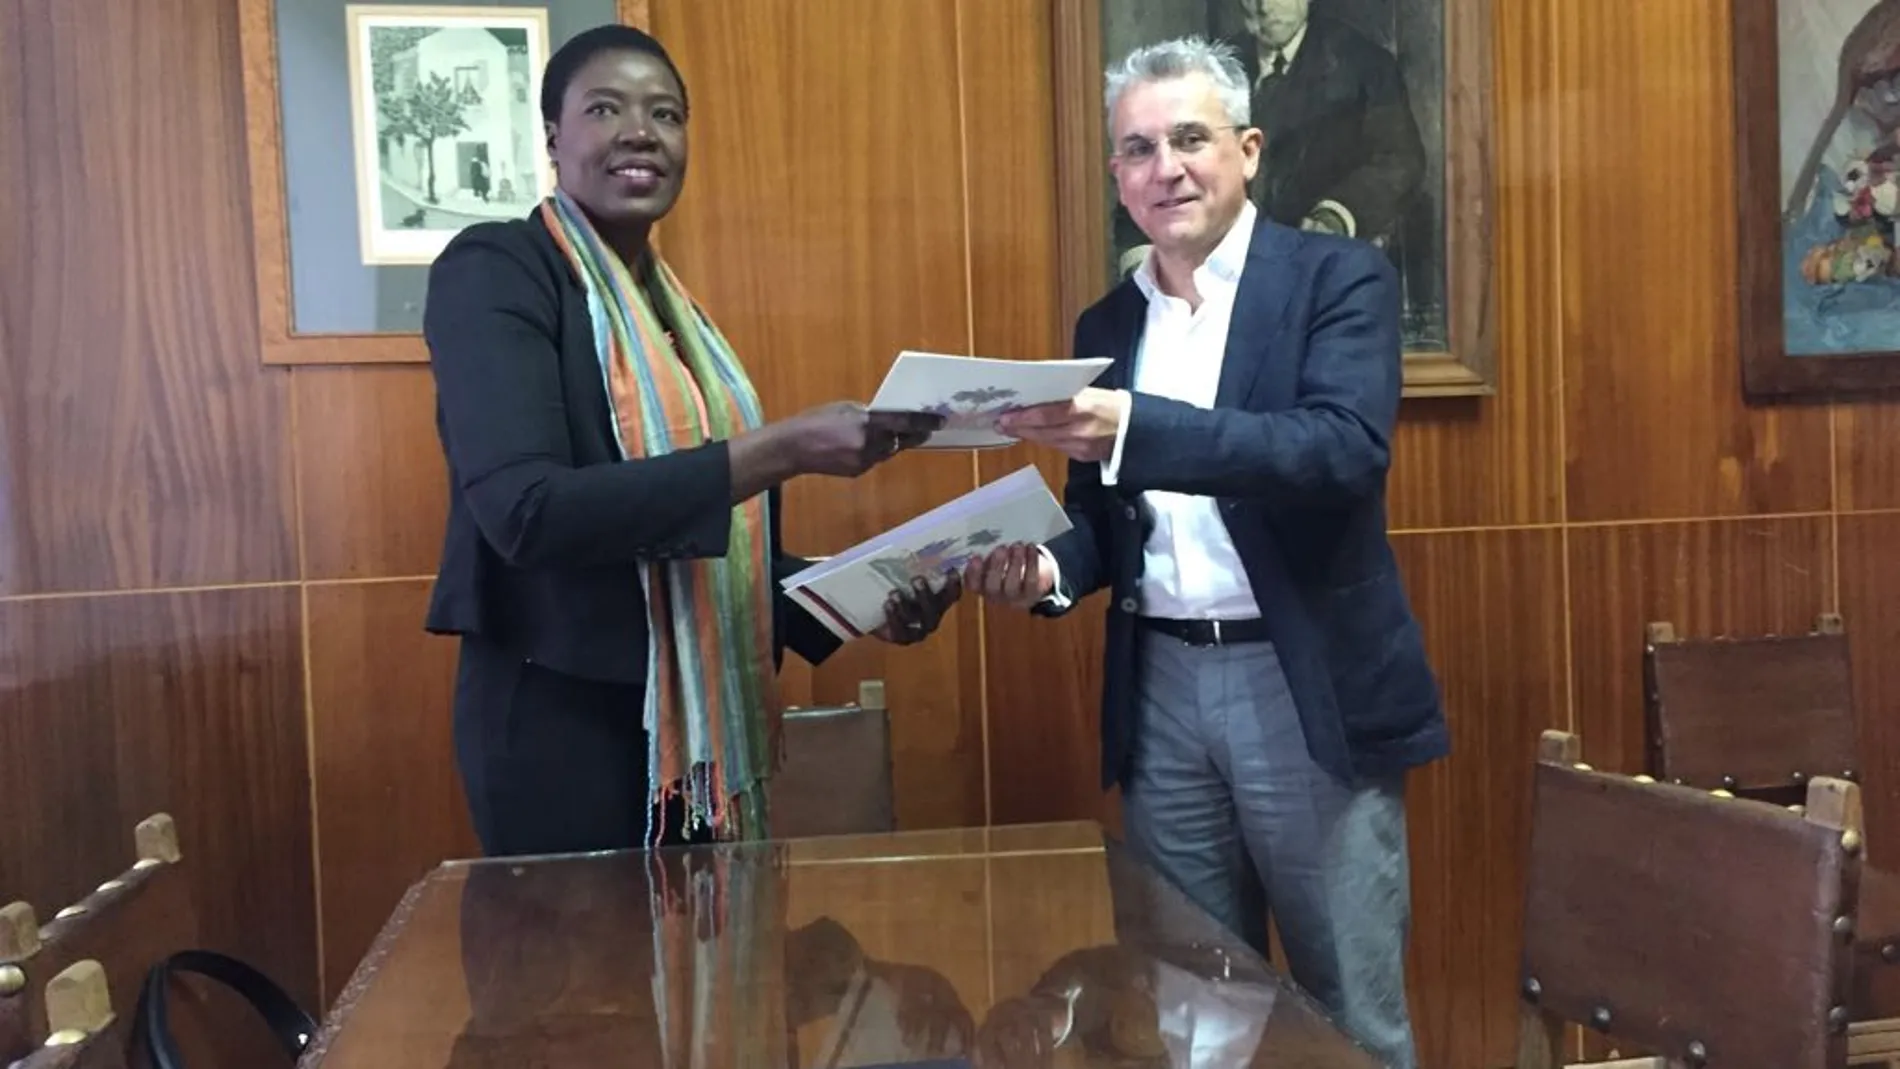 Olga Médor Ducasse, encargada de Negocios de la Embajada de Haití en España y el director de la Escuela de Arte de Granada, Blas Calero Ramos, intercambiando el acuerdo firmado entre ambos países.